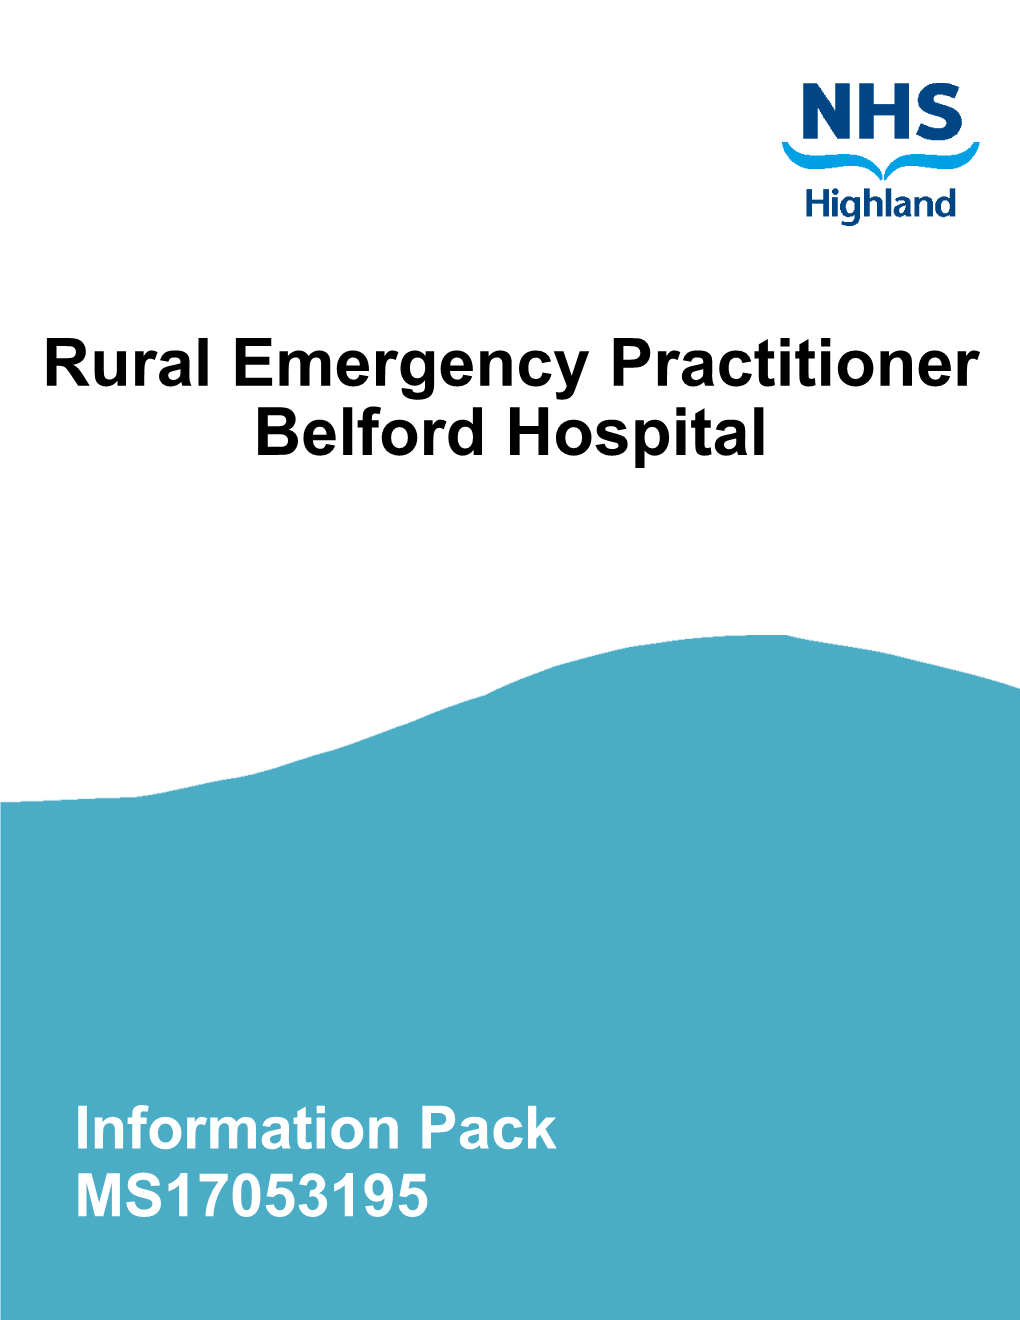 Rural Emergency Practitioner Belford Hospital